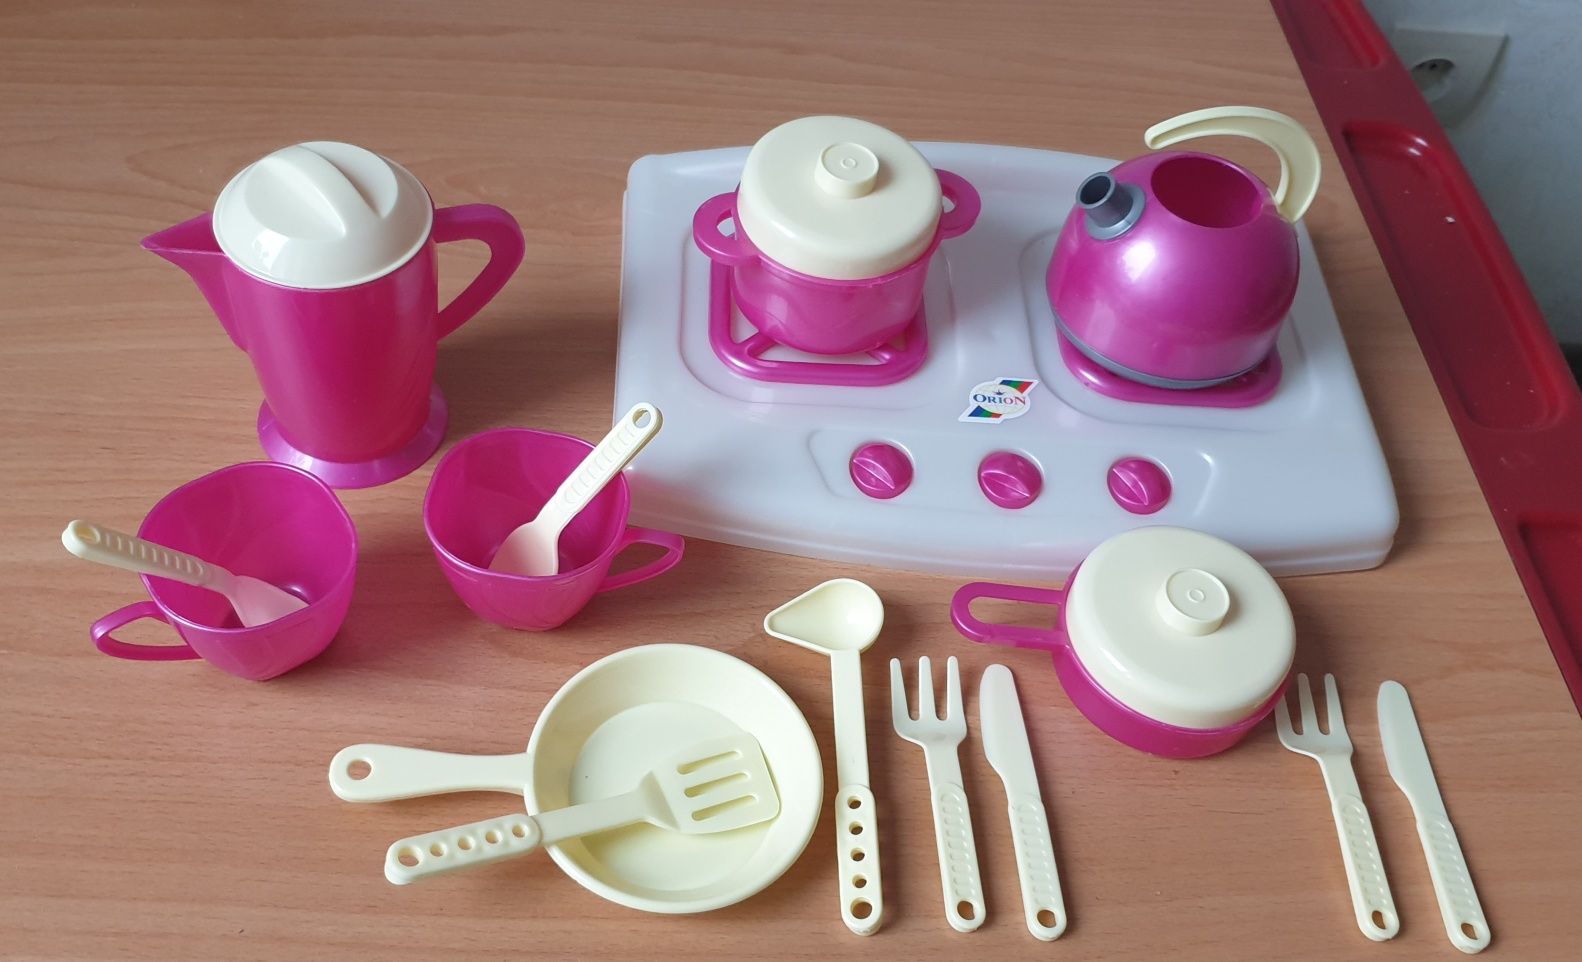 Красивый розовый набор посуды с печкой, чайником